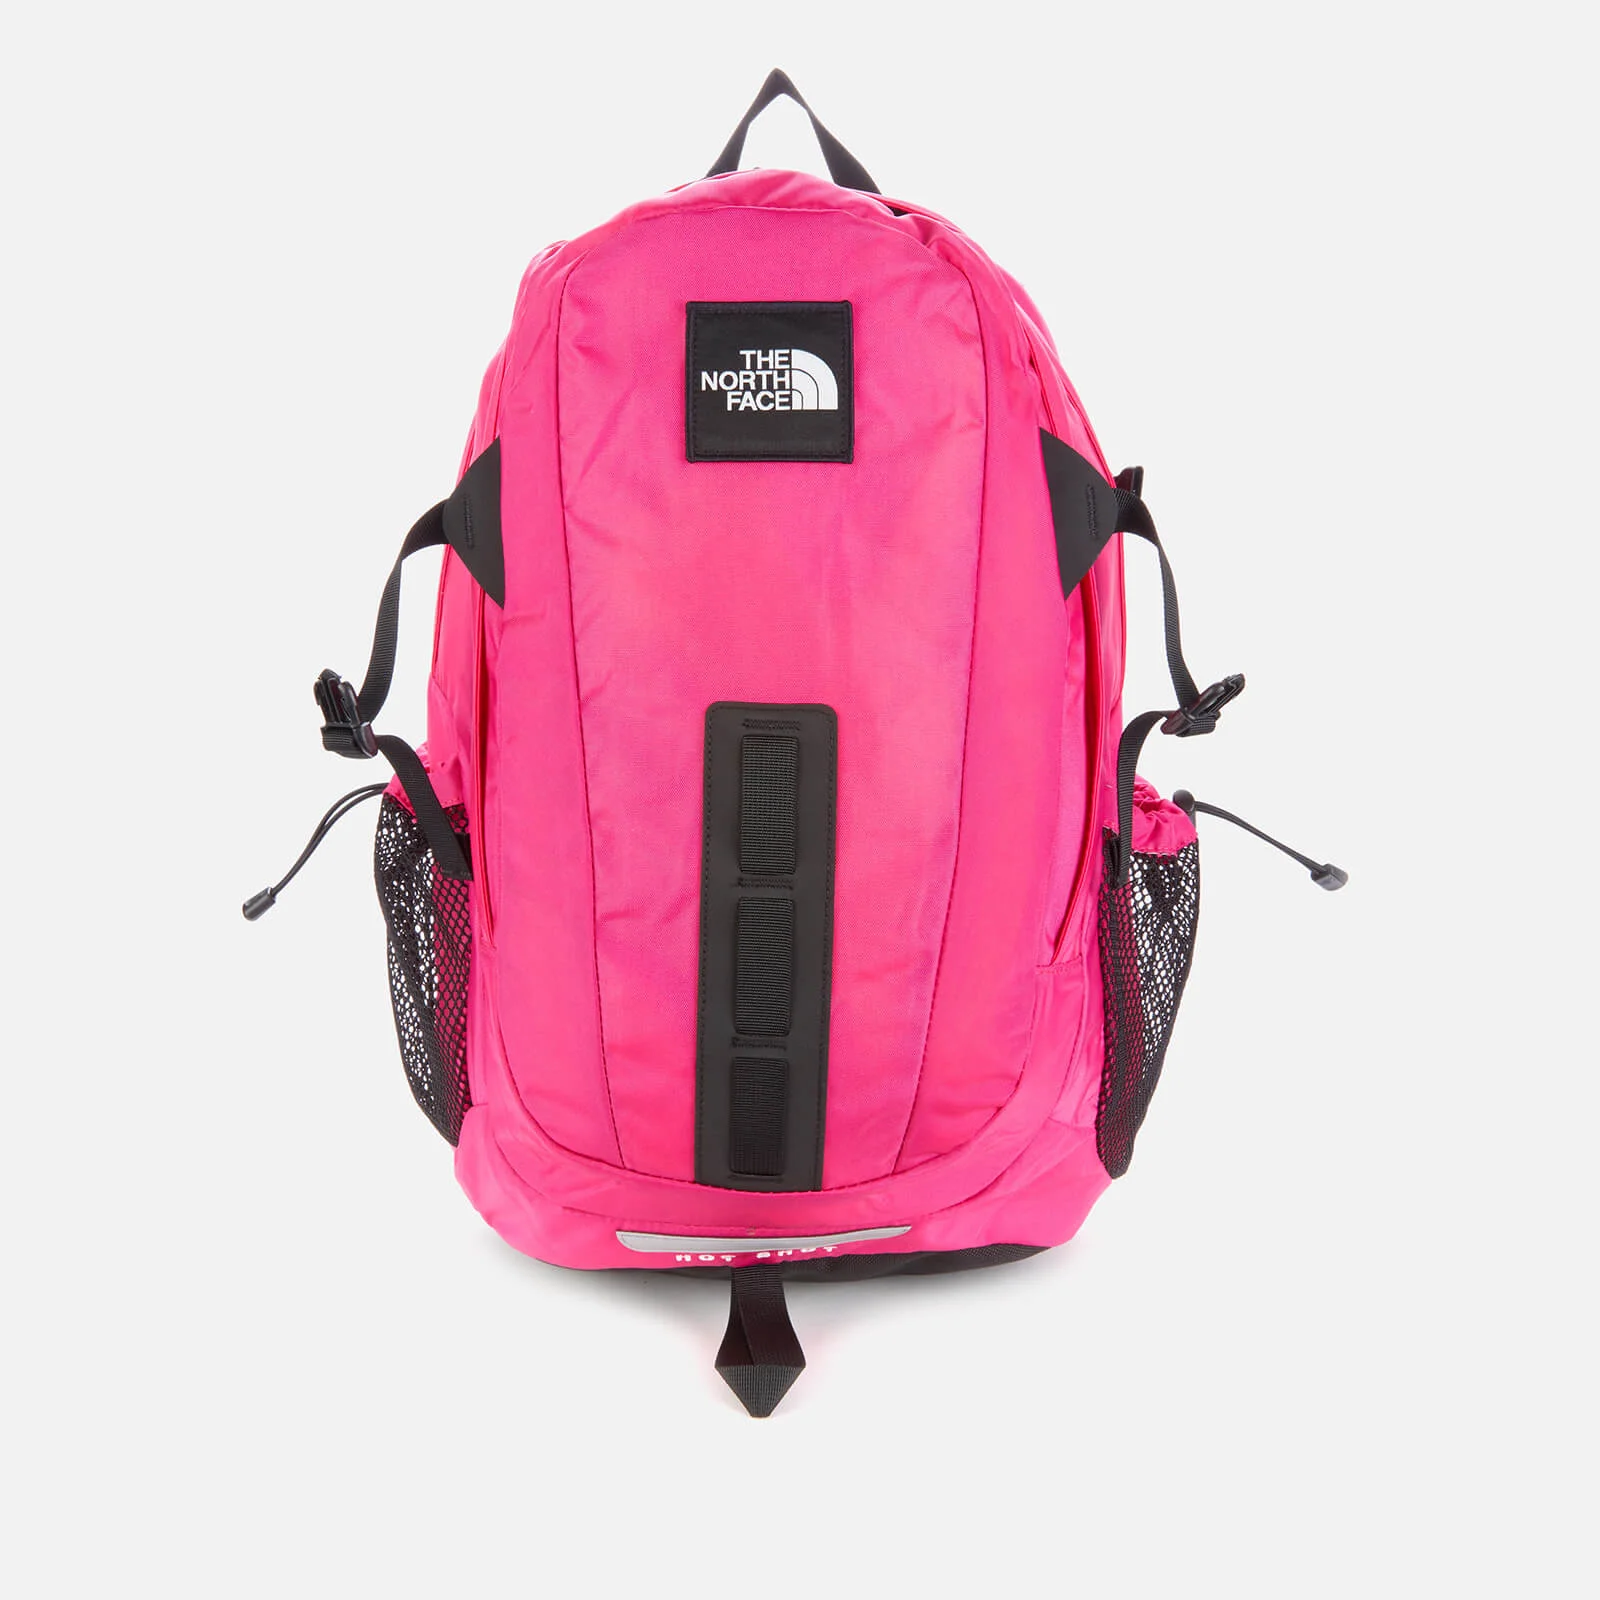 The North Face Hot Shot Se Backpack - Mr. Pink/TNF Black Image 1